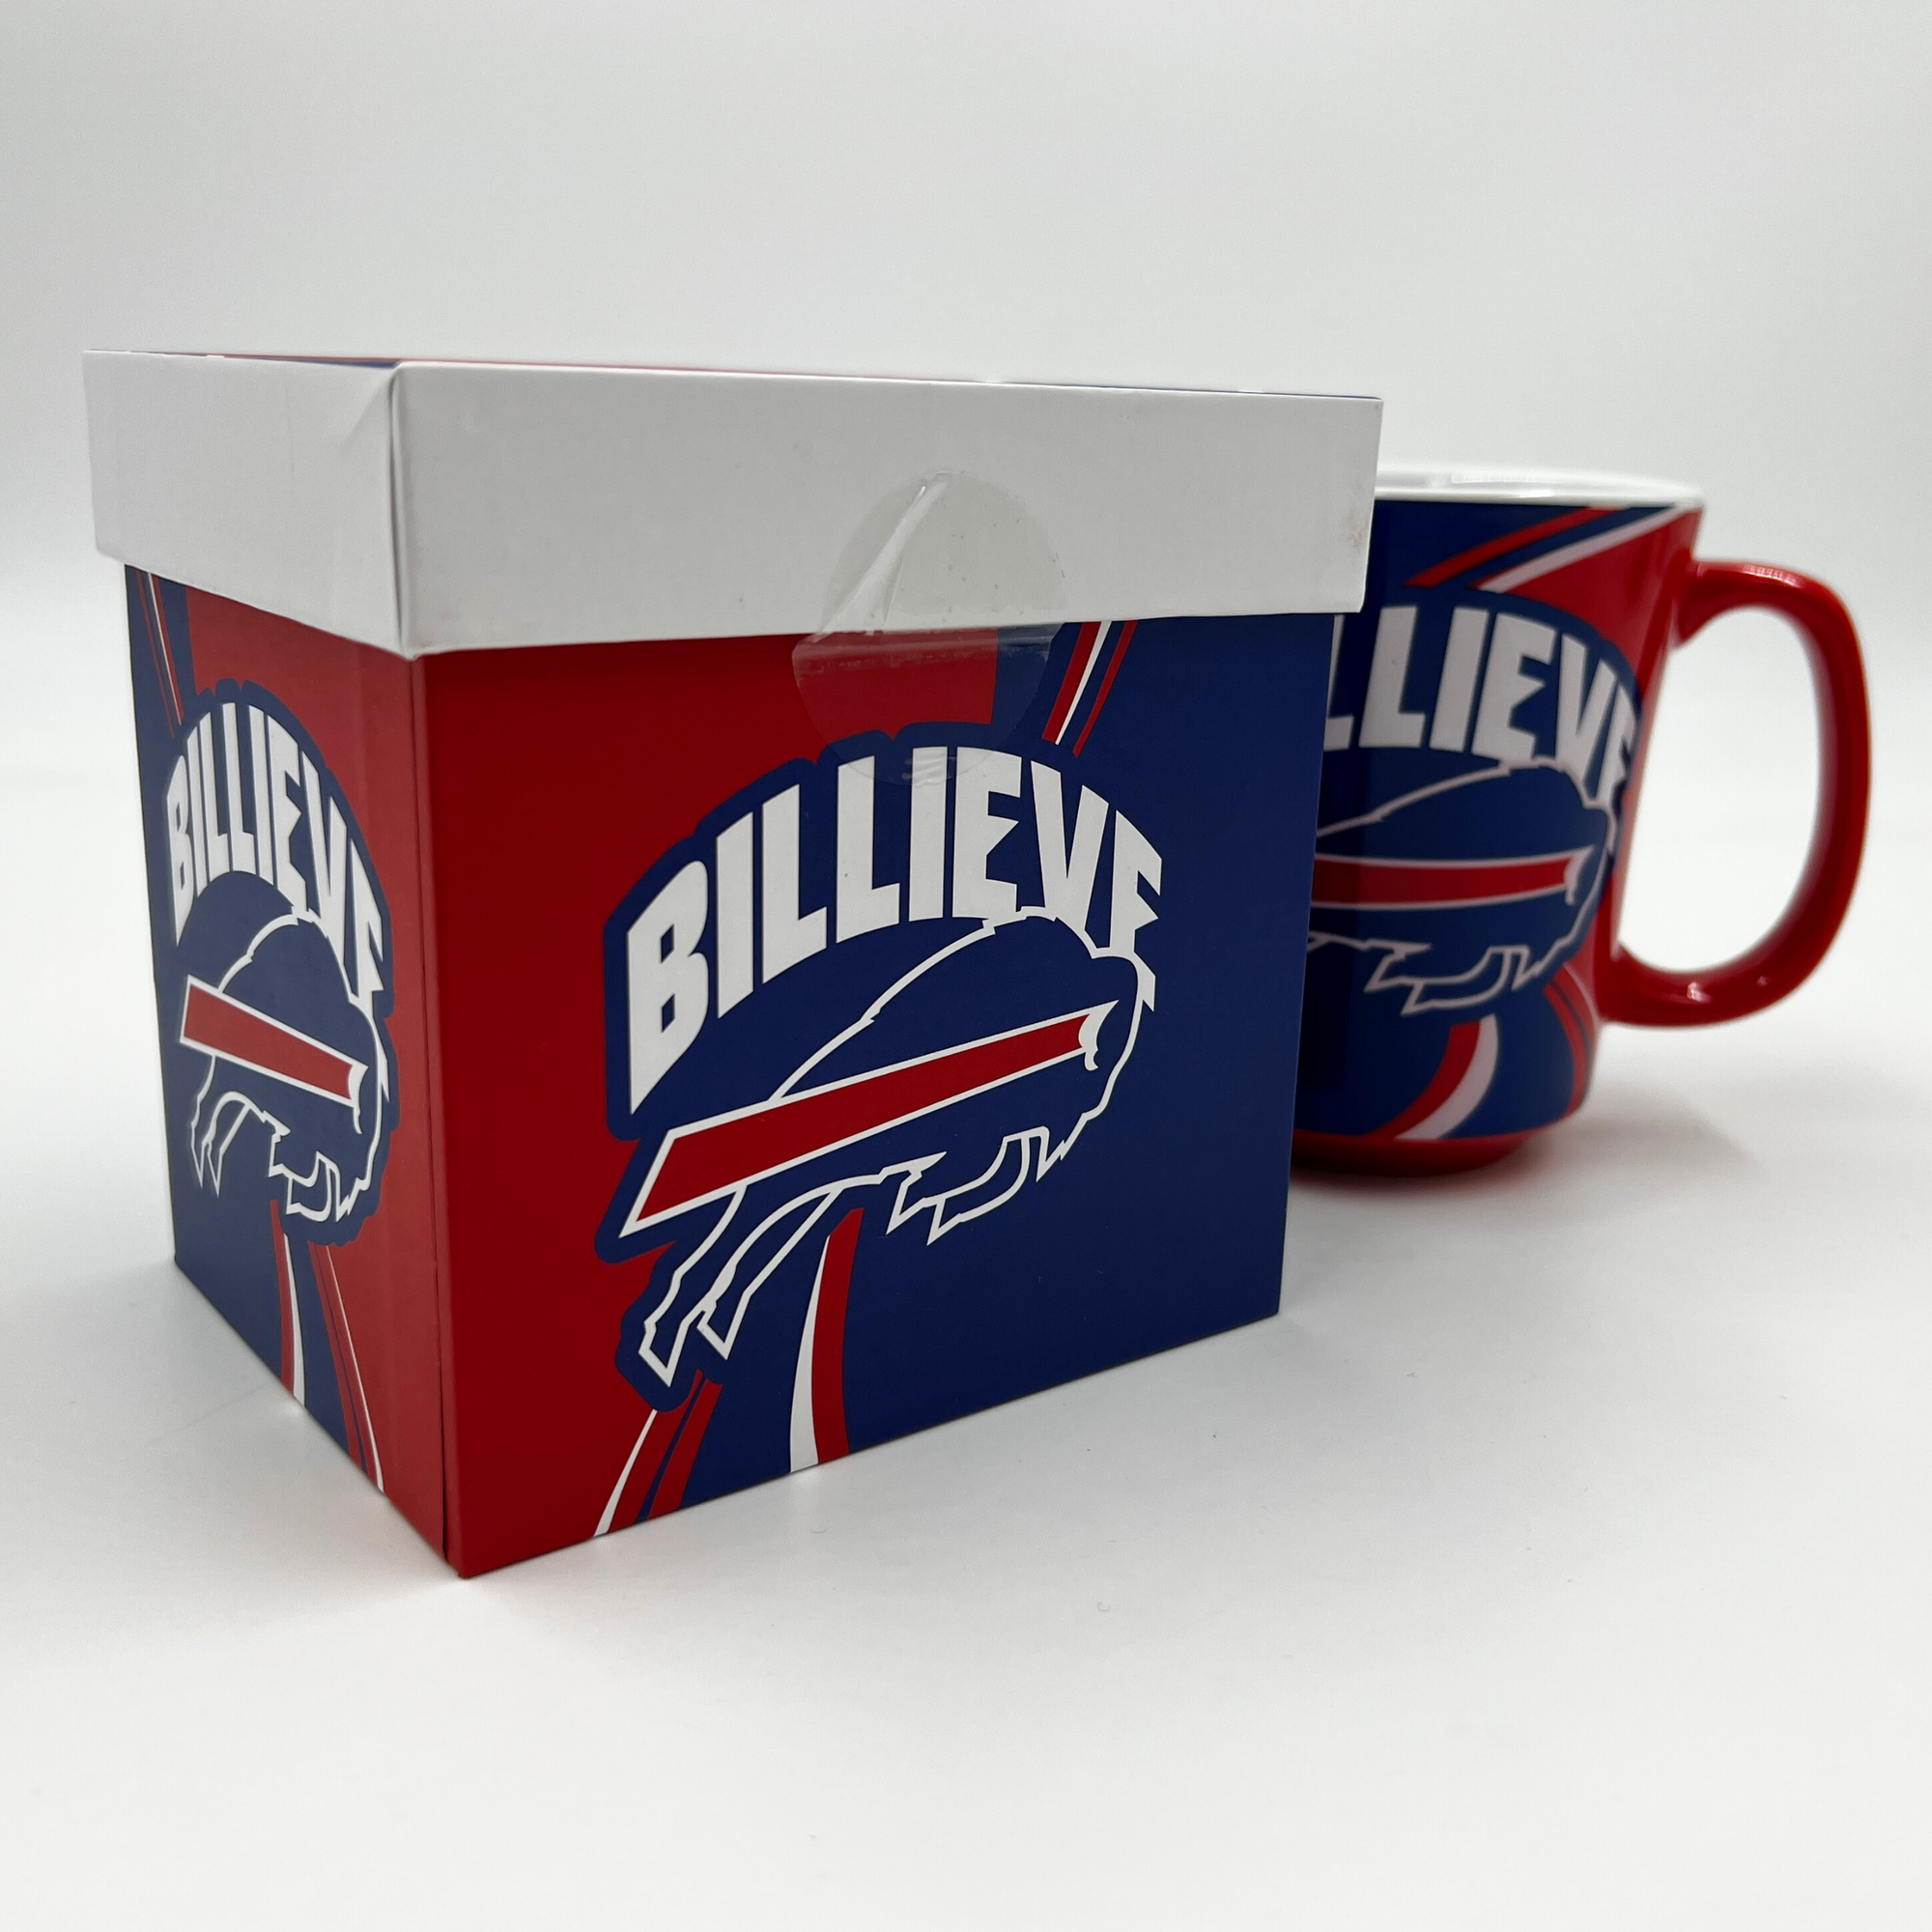 Buffalo Bills Billieve 14oz Ceramic Mug